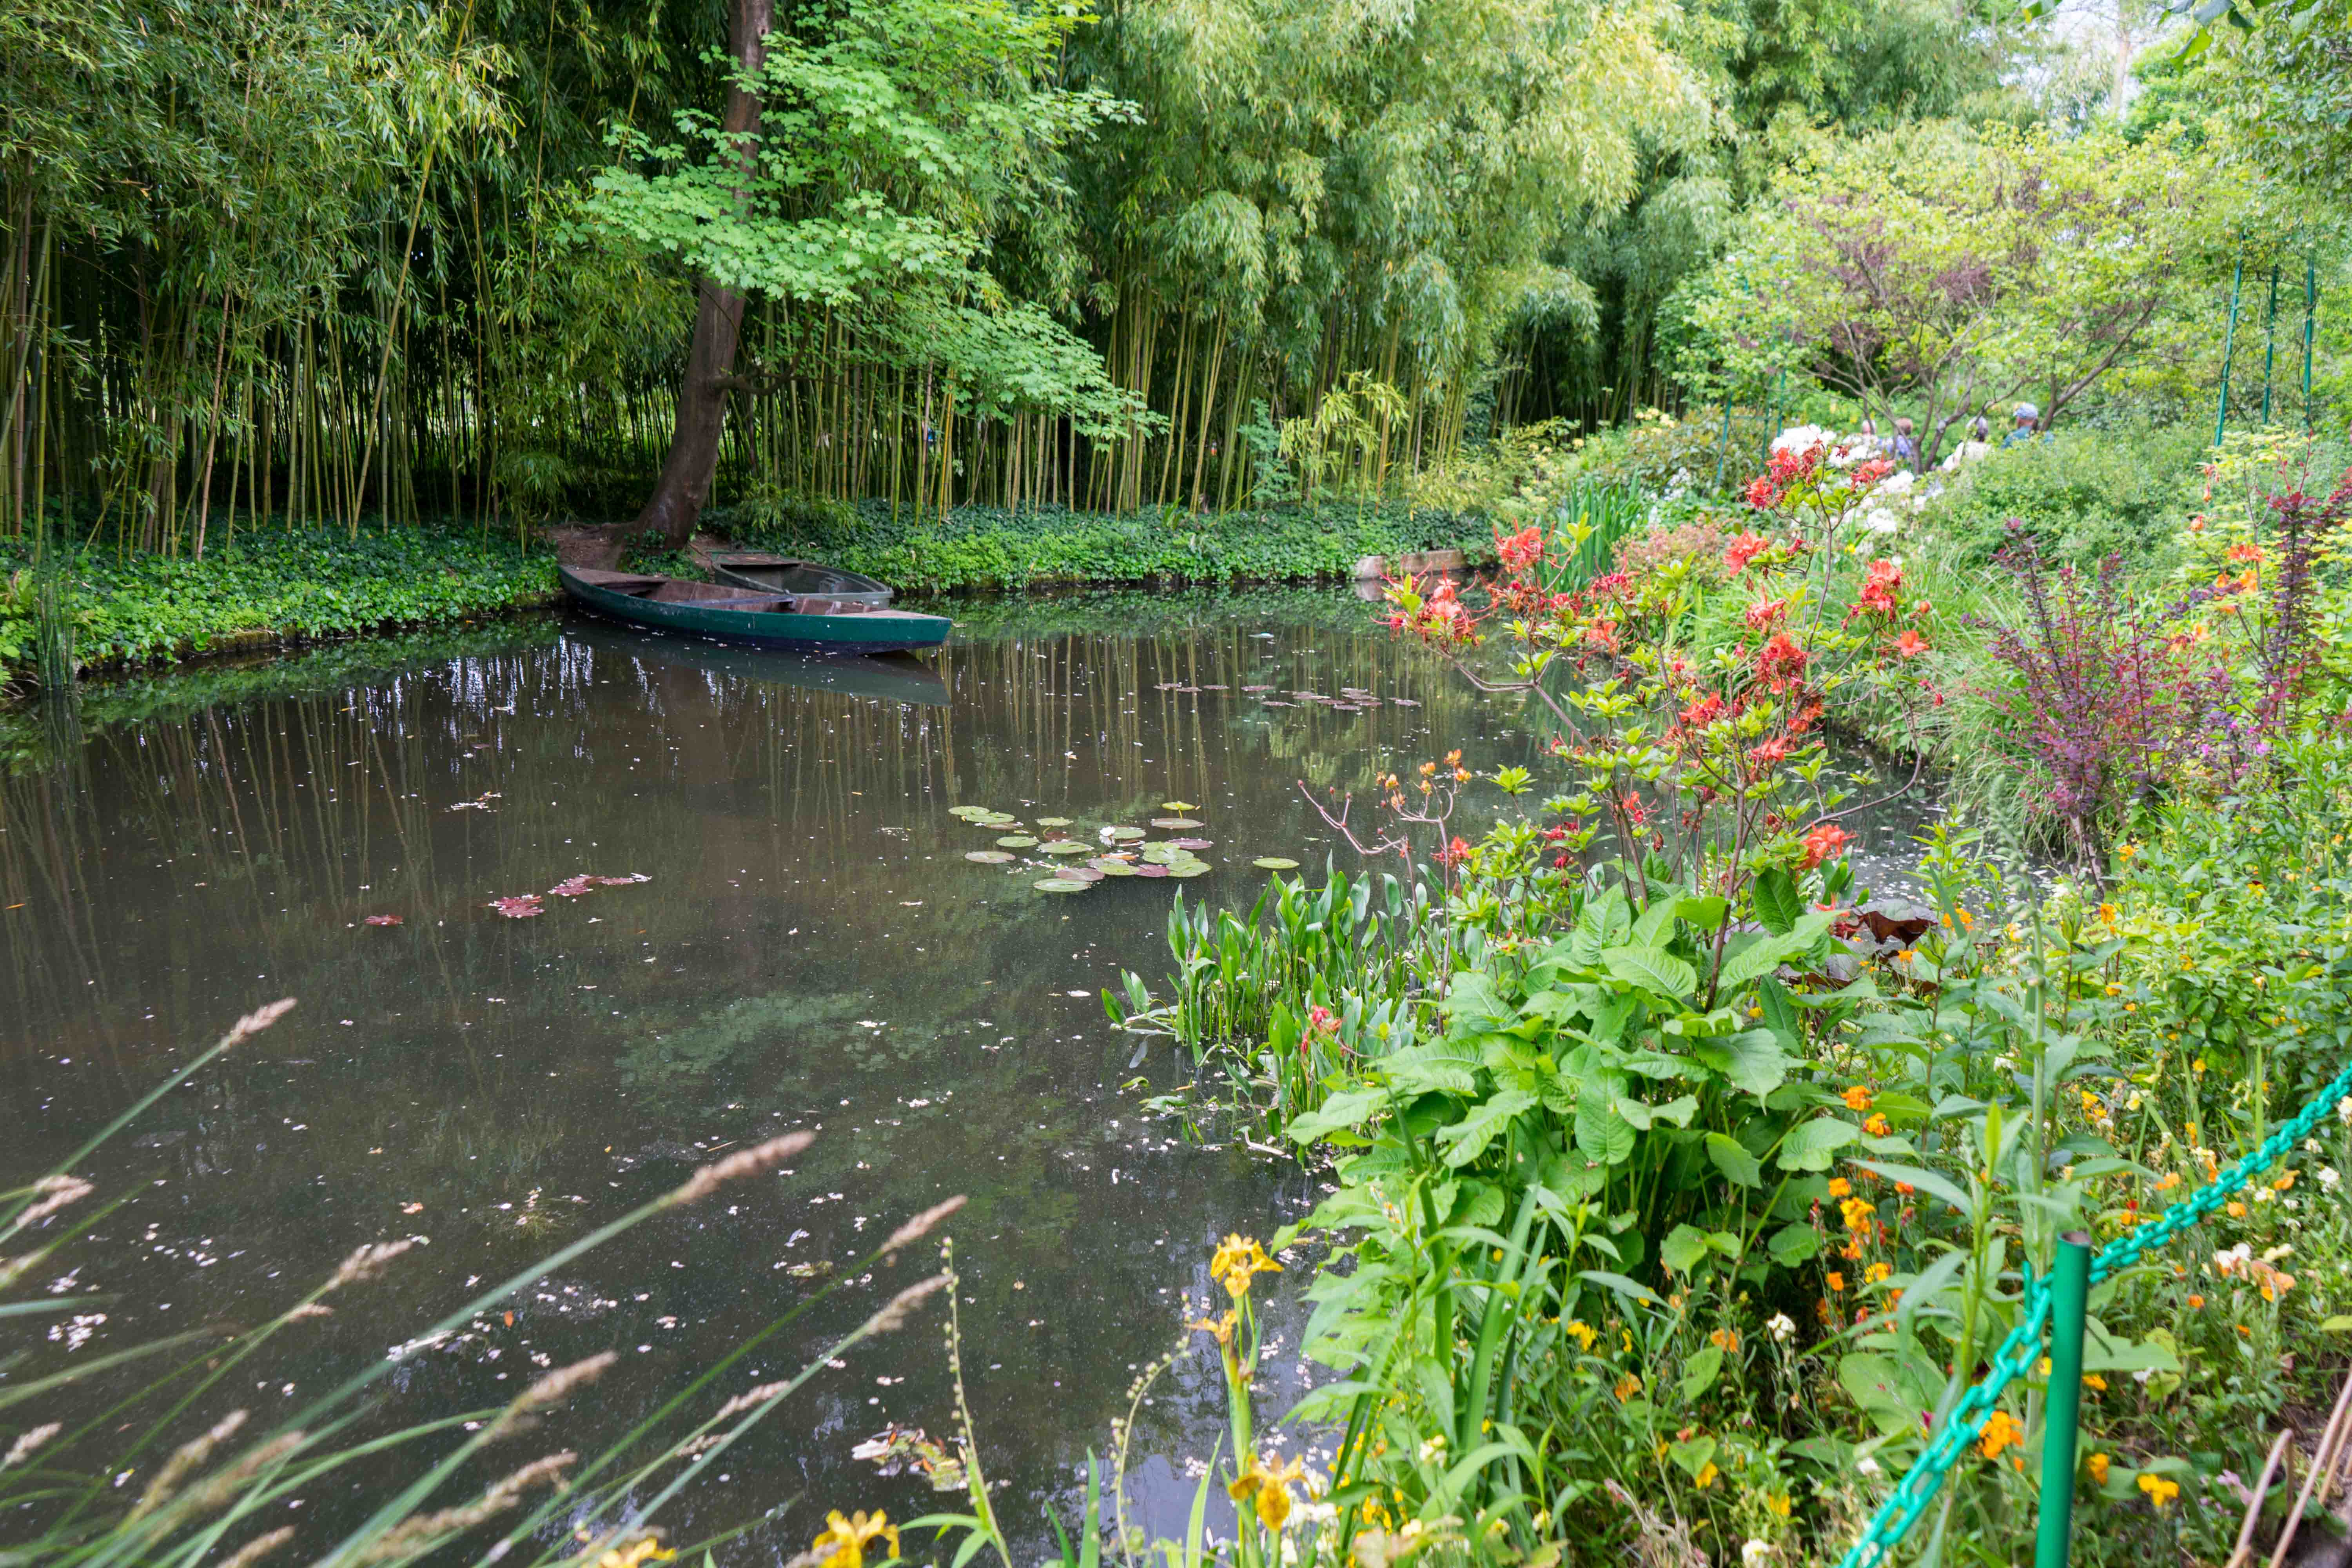 Monets Garten Givenchy Seerosenteich Monet Normandie Rundreise beste Reiseroute Seine Flusskreuzfahrt AROSA Sehenswürdigkeiten Sightseeing Reiseblog 3